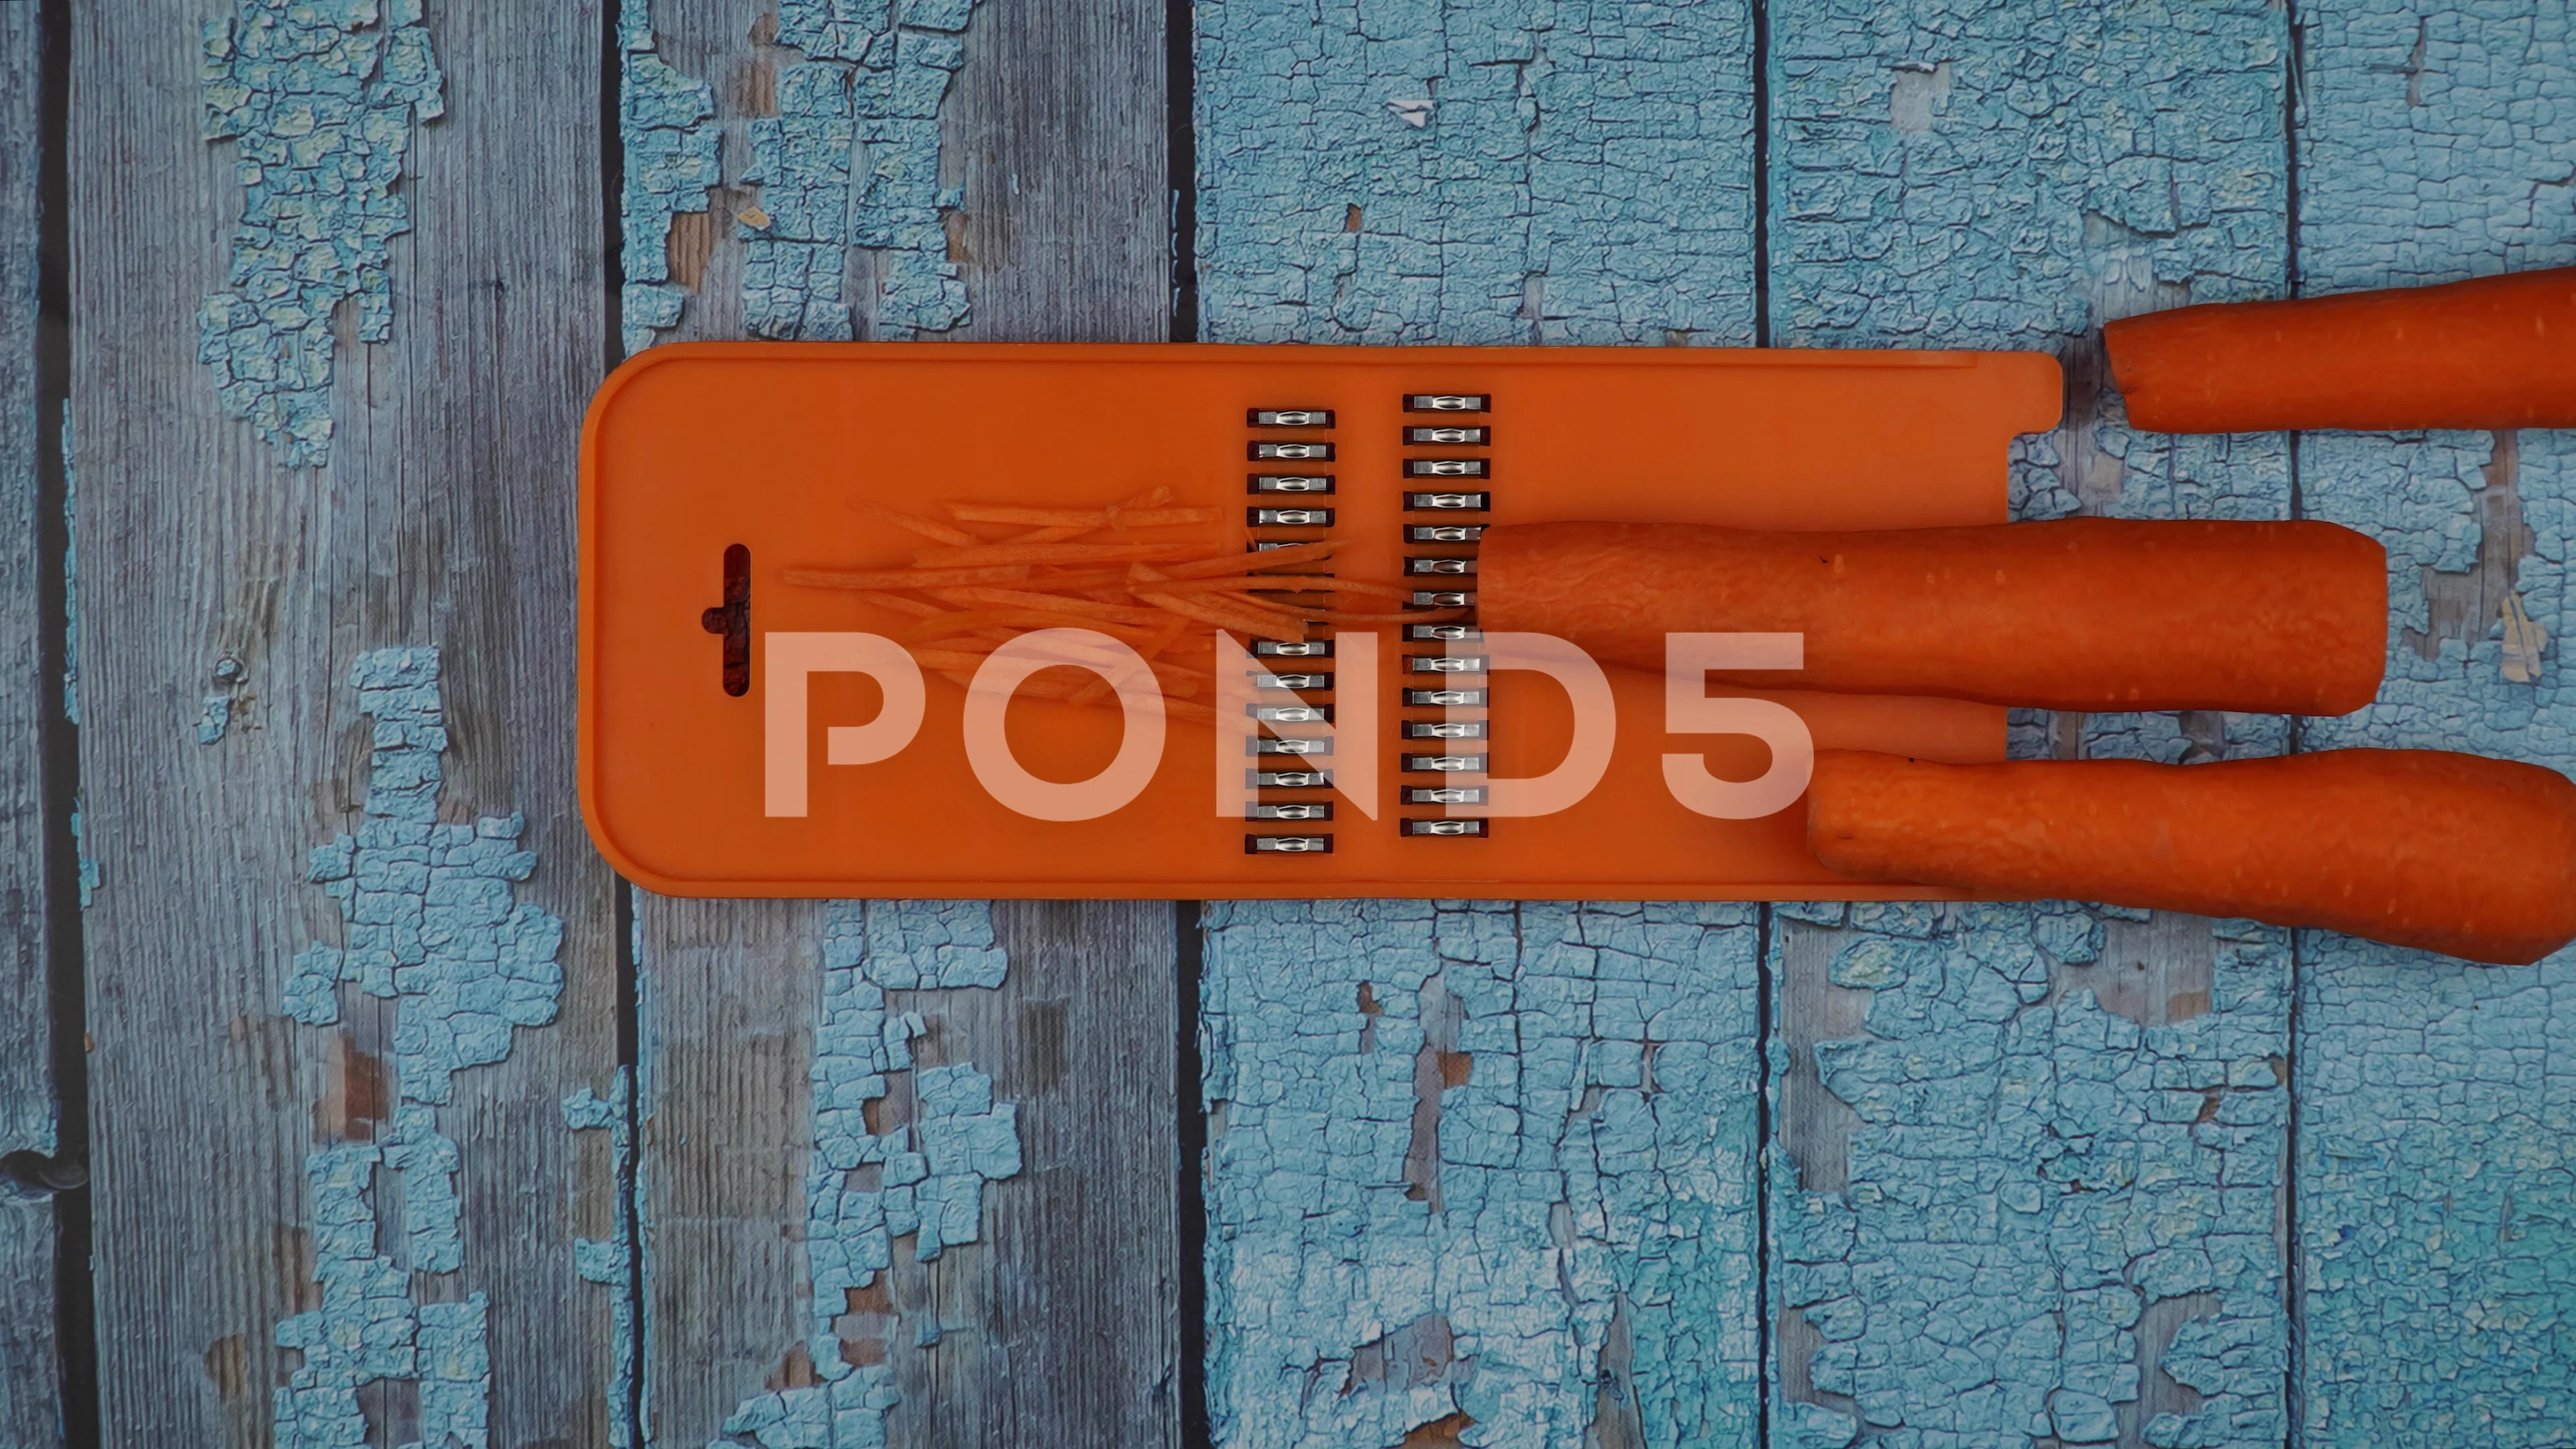 https://images.pond5.com/carrots-are-shredded-grater-footage-151659180_prevstill.jpeg